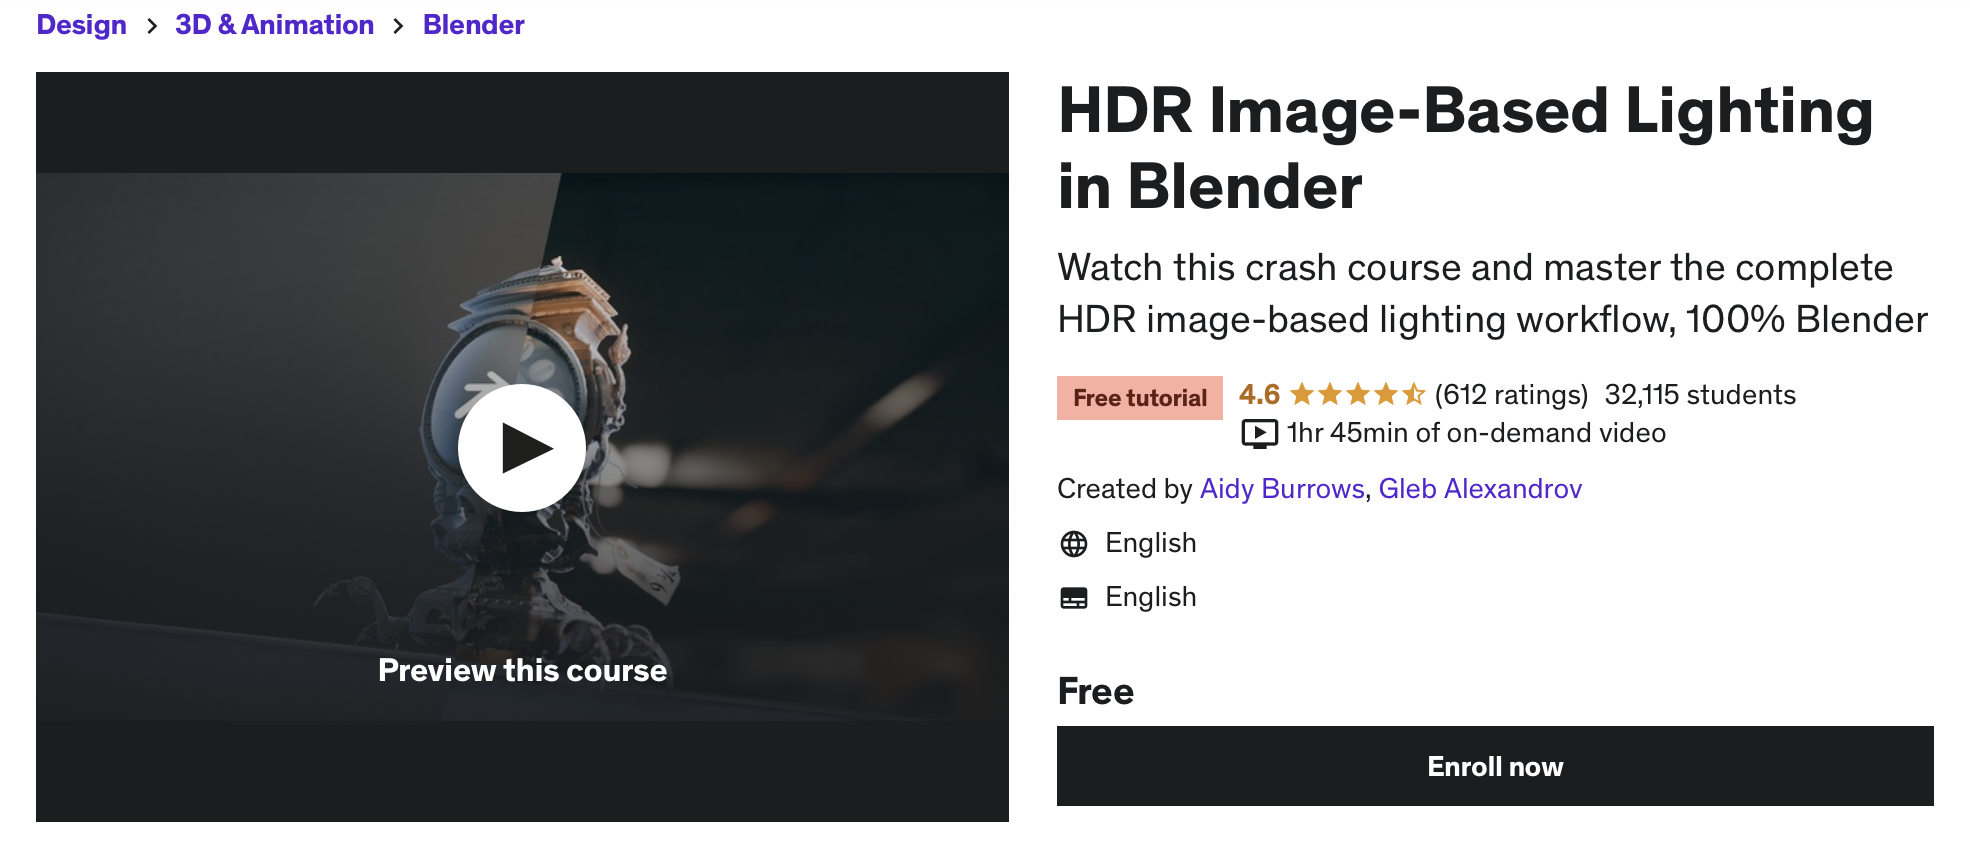 HDR Image-Based Lighting in Blender by Udemy